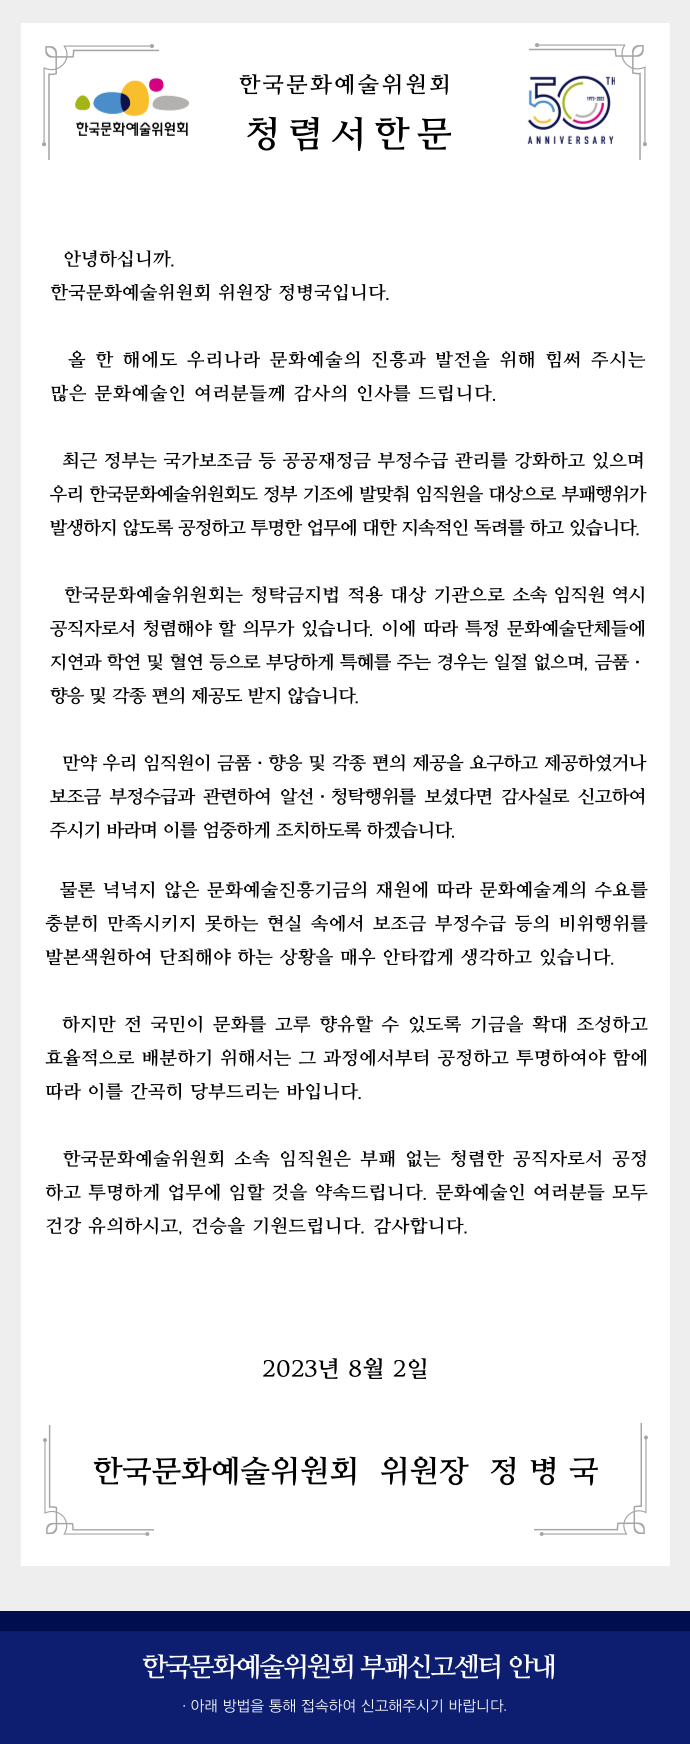 한국문화예술위원회 청렴서한문(자세한 내용 아래 참조)